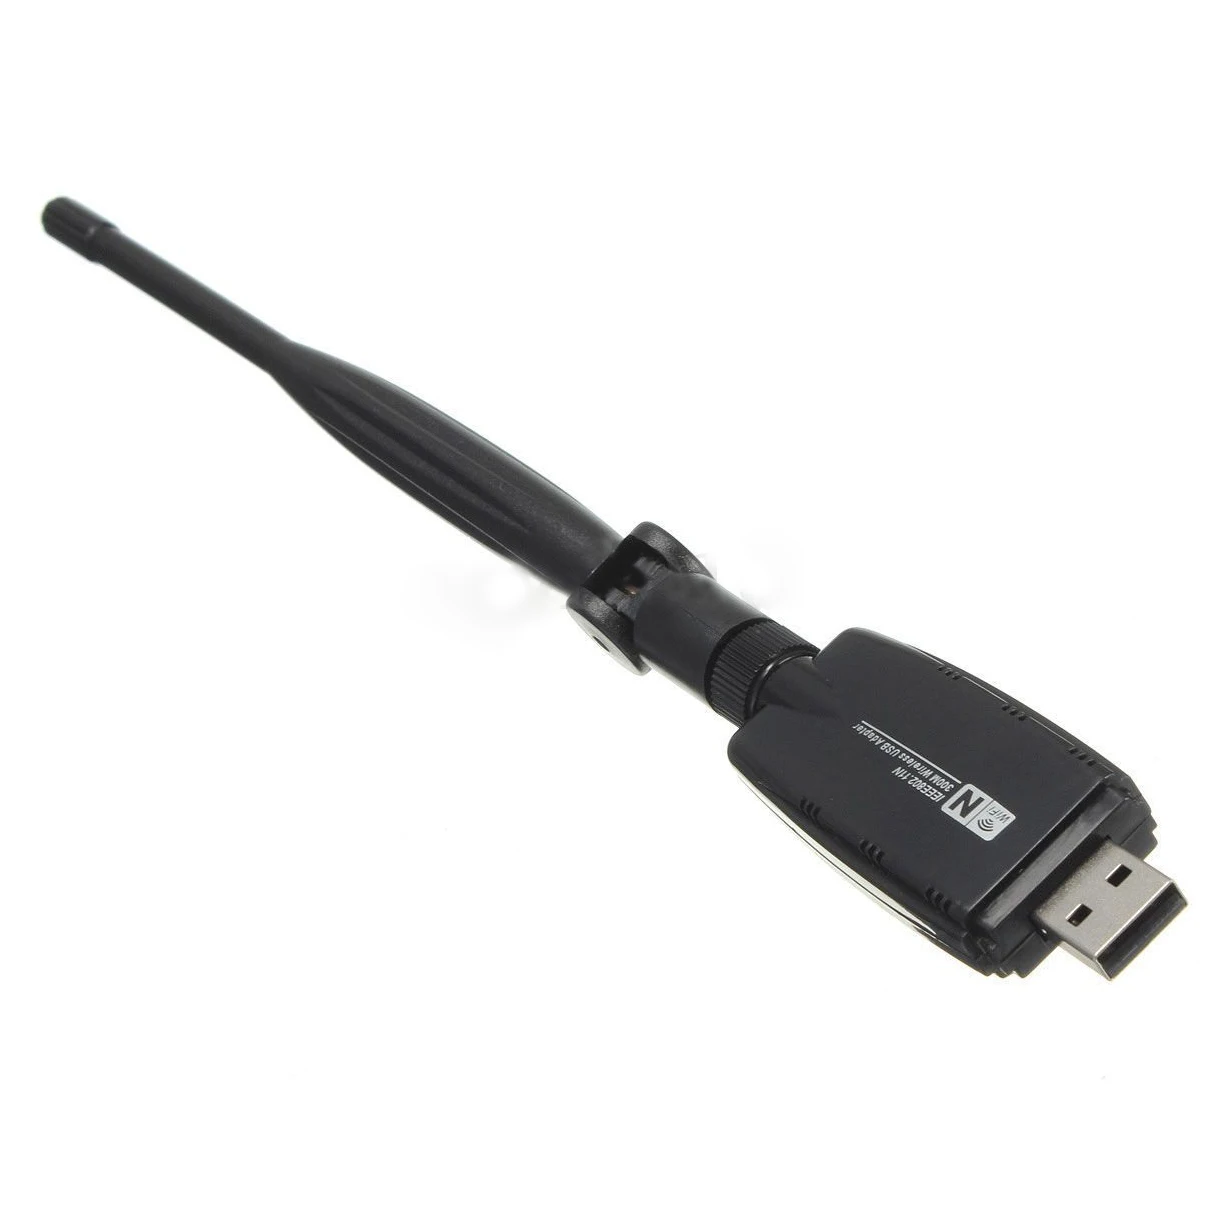 W/антенна 300 Мбит Мини Беспроводной USB Wi-Fi адаптер сети LAN карты 802.11n/g/b